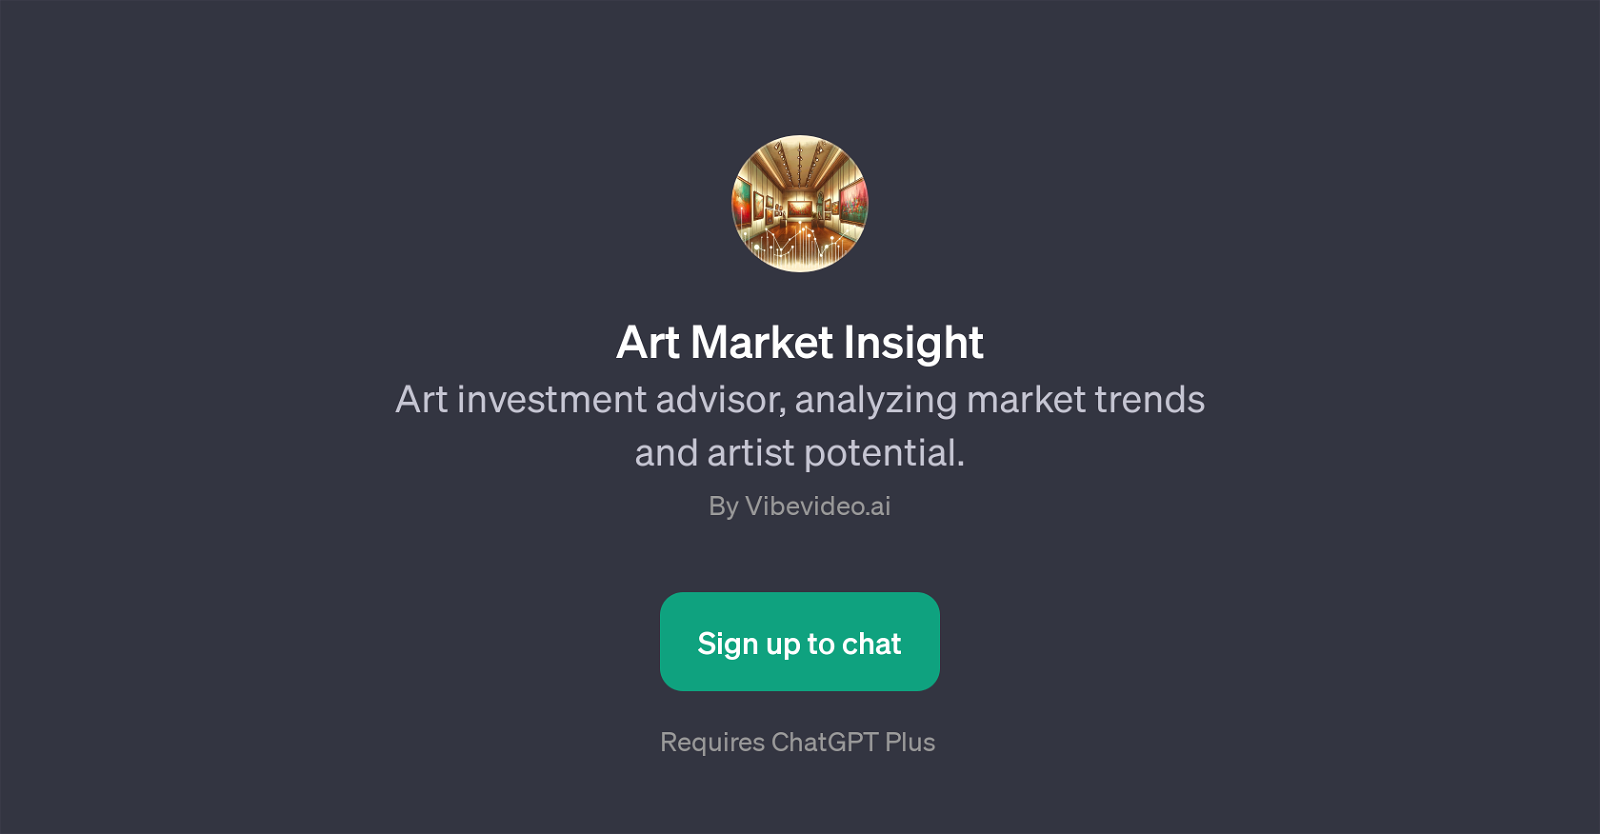 Art Market Insight website